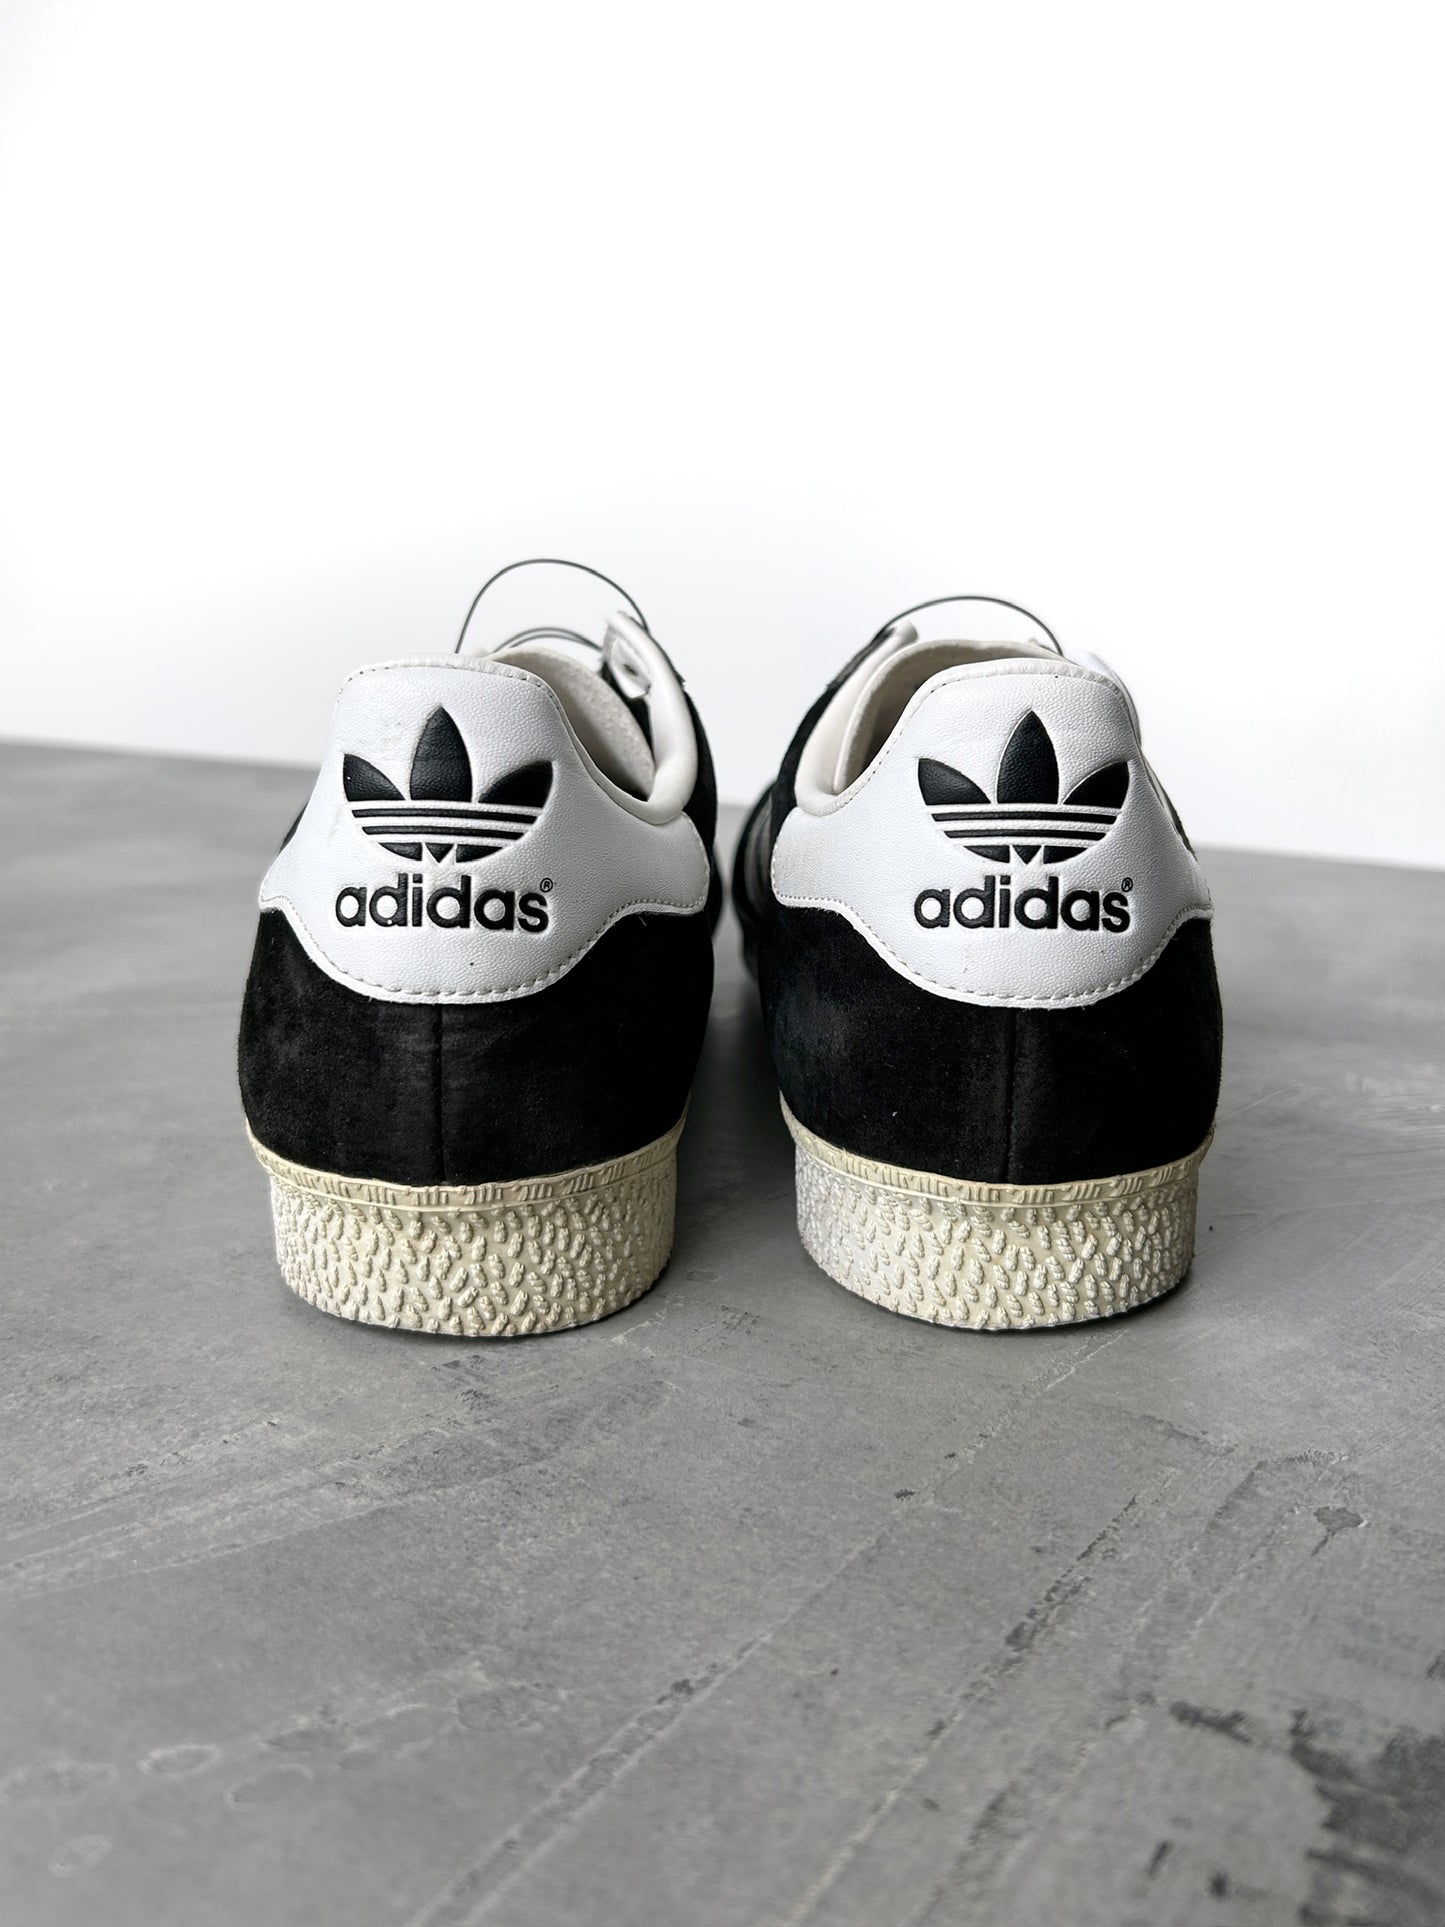 Adidas Gazelle Sneakers - Men's 9 / Women's 10.5